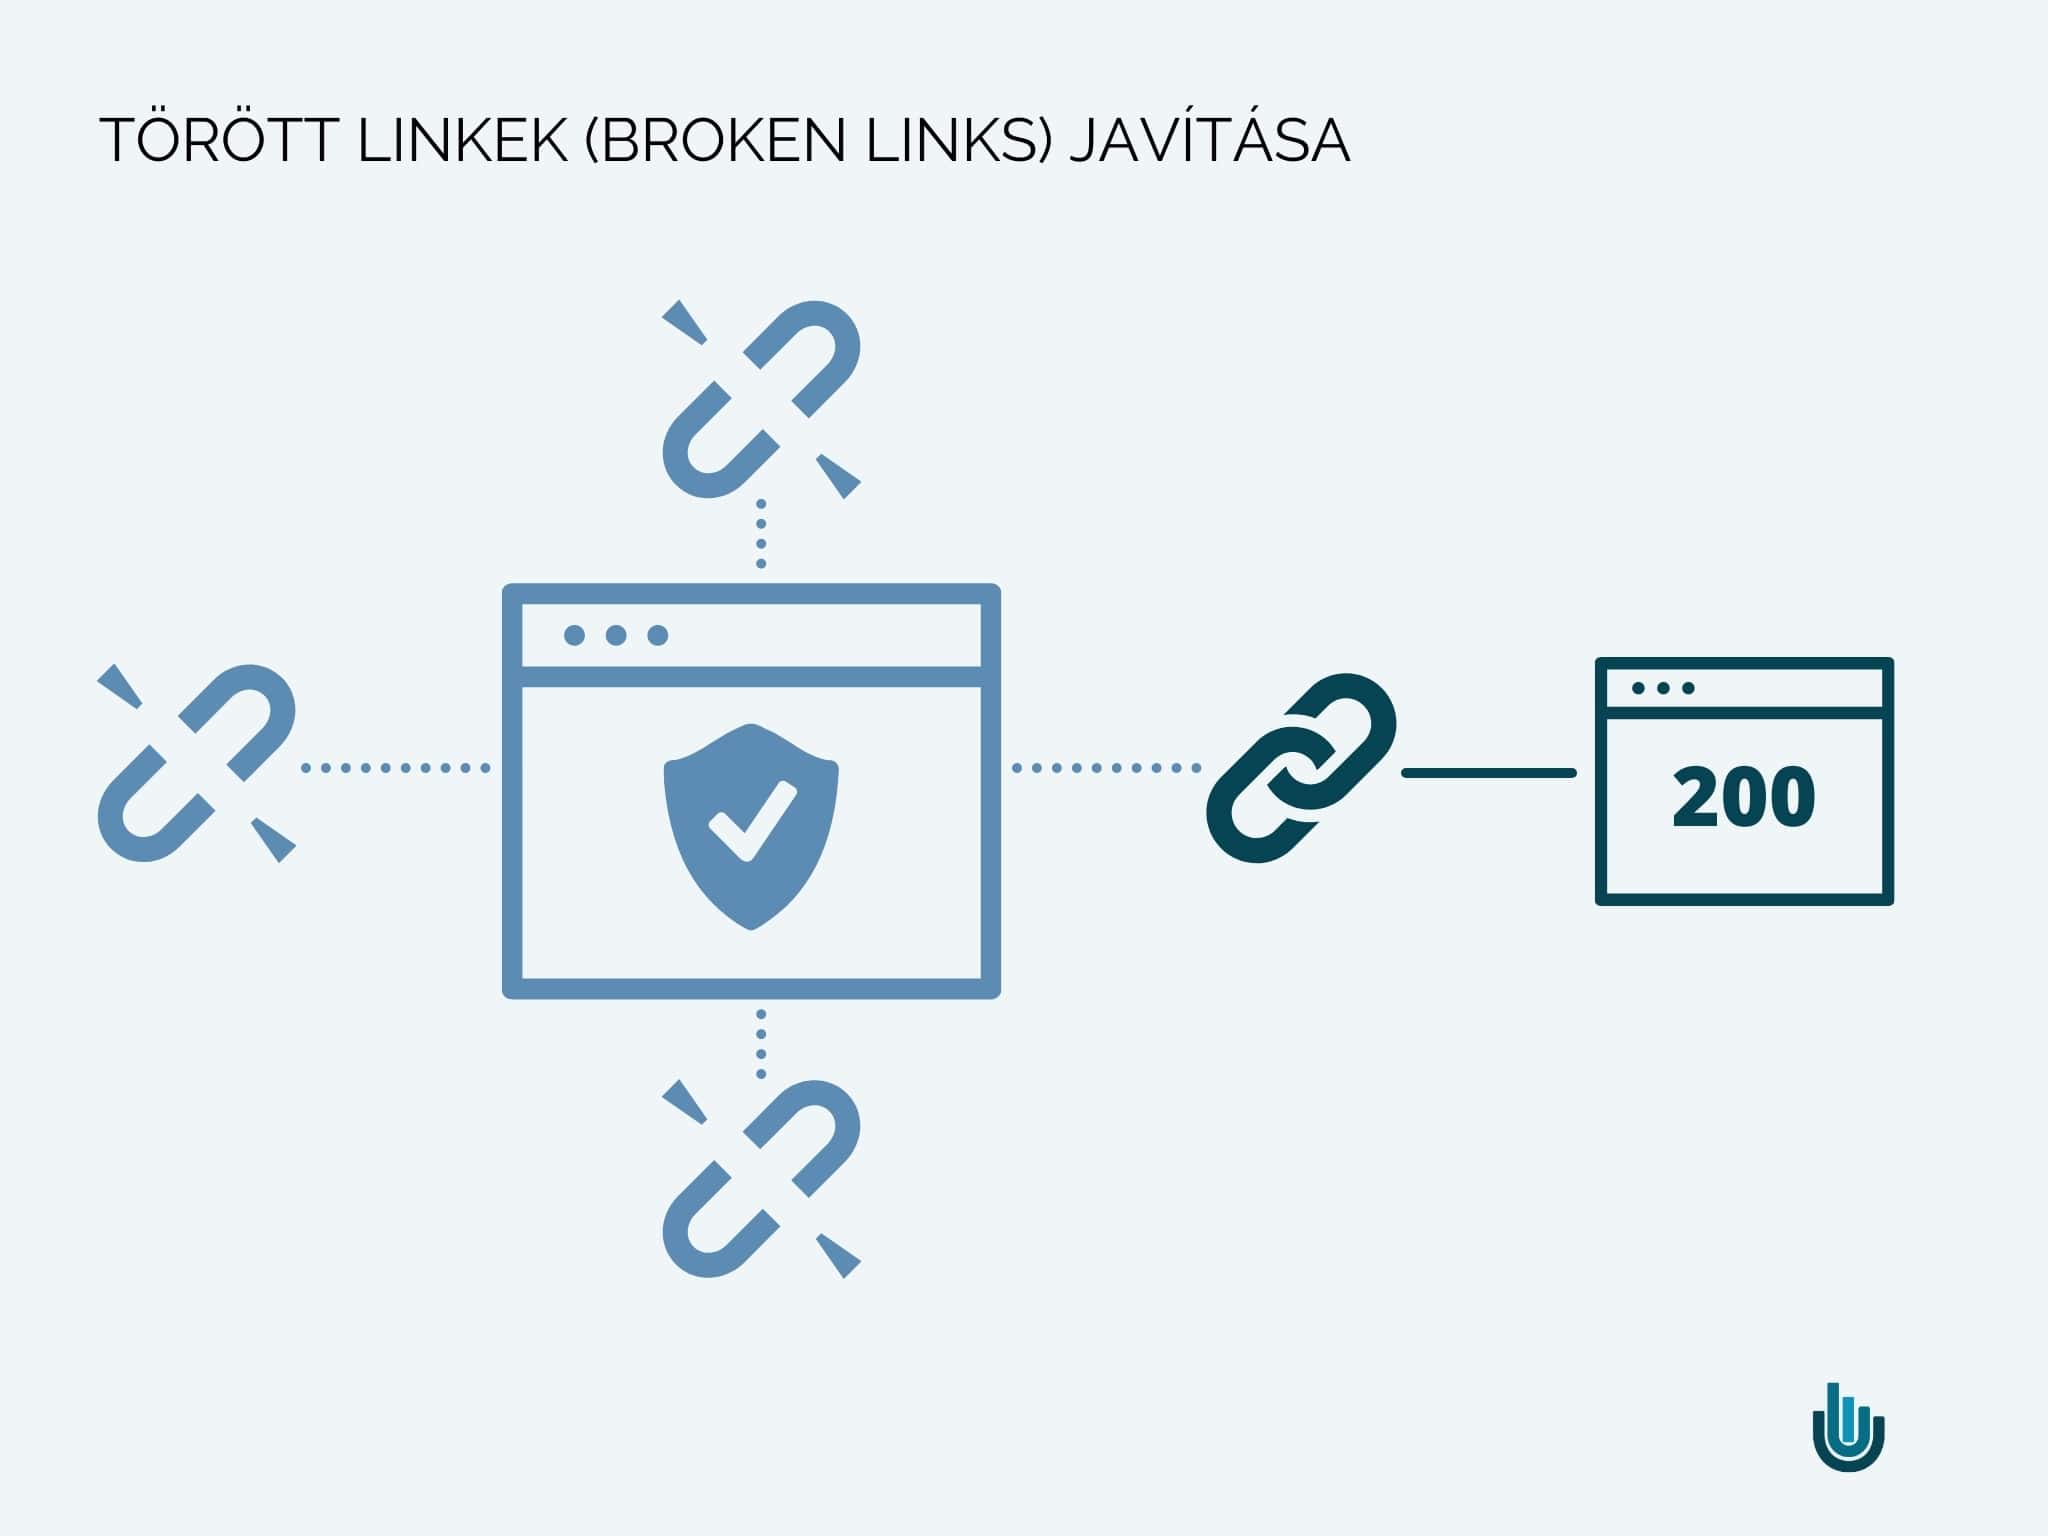 Törött linkek (broken links) javítása linképítés szempontjából